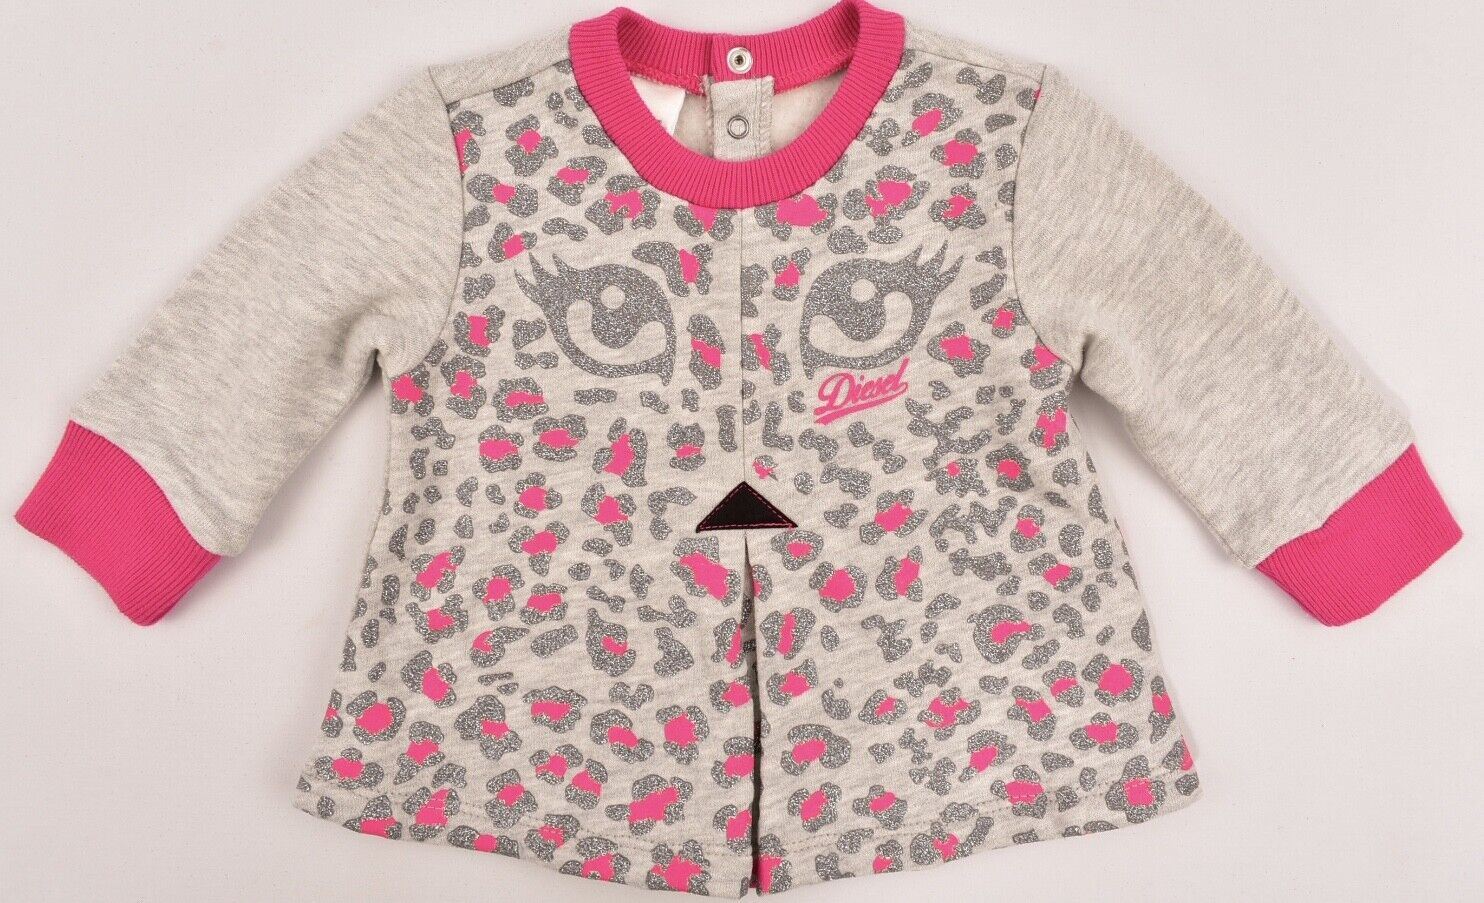 DIESEL Baby Girls' Sweatshirt Top, Jumper, Pink/Grey, size 6 months